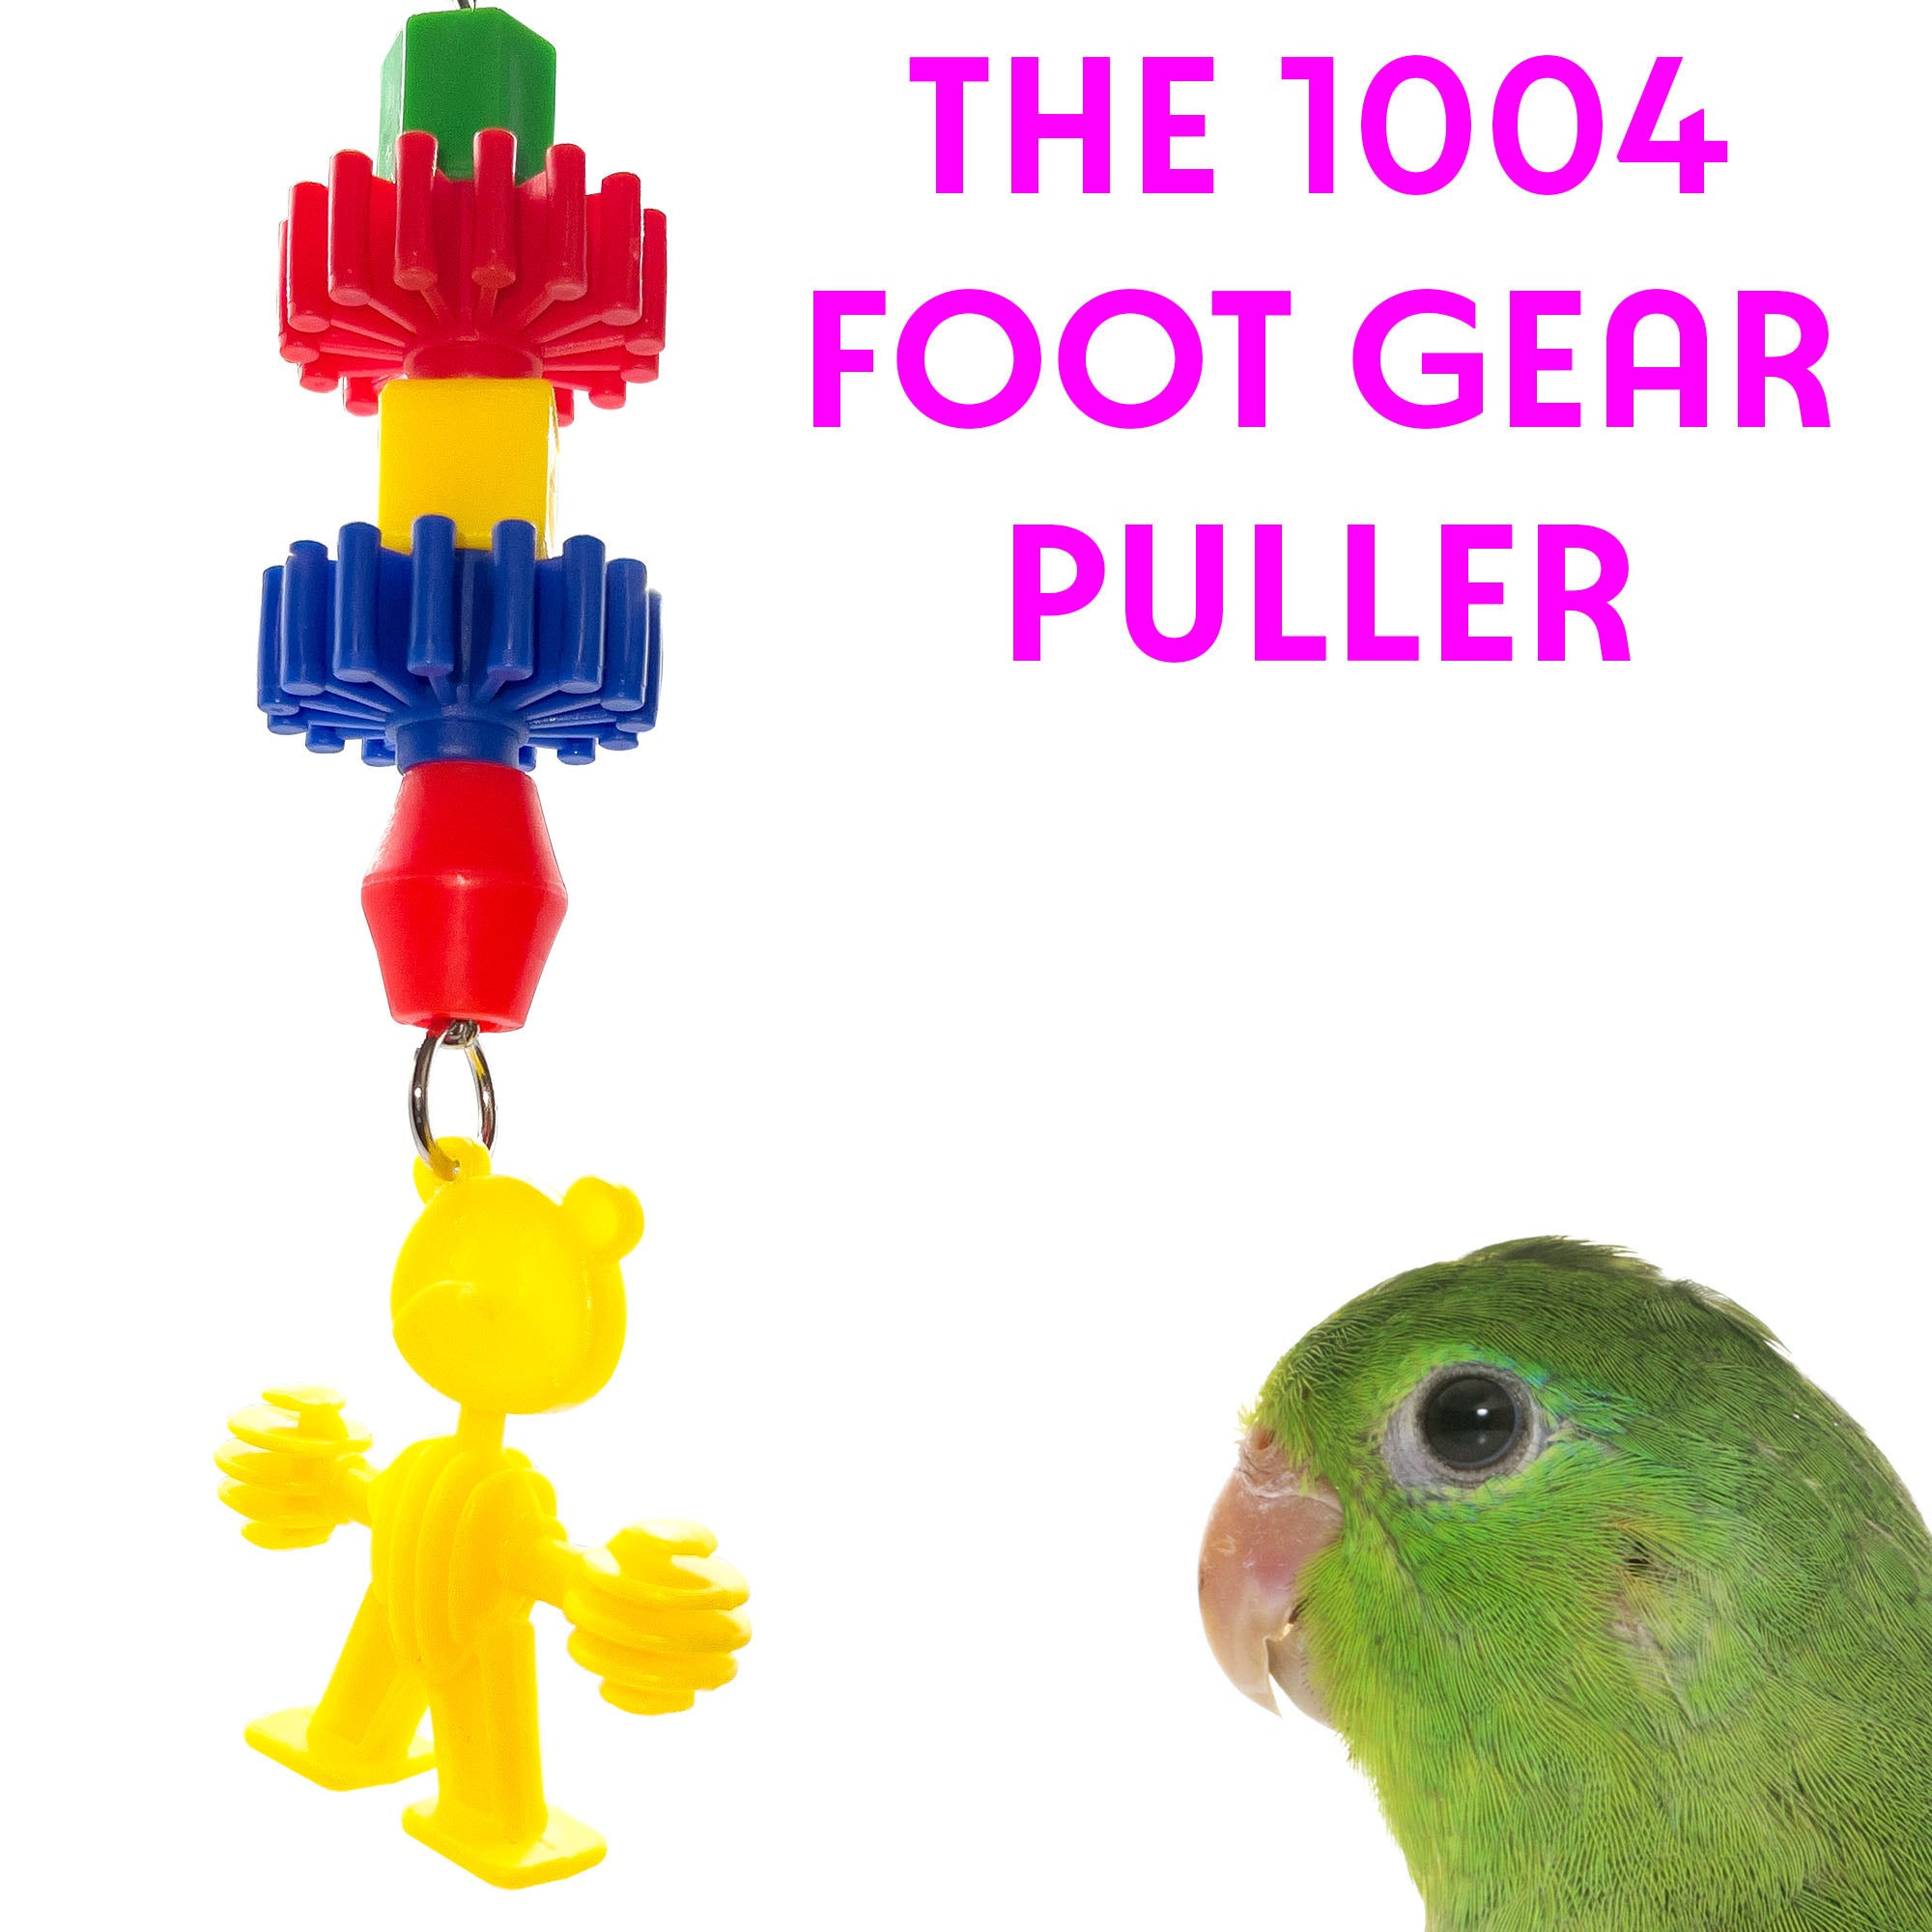 1004 Foot Gear Puller